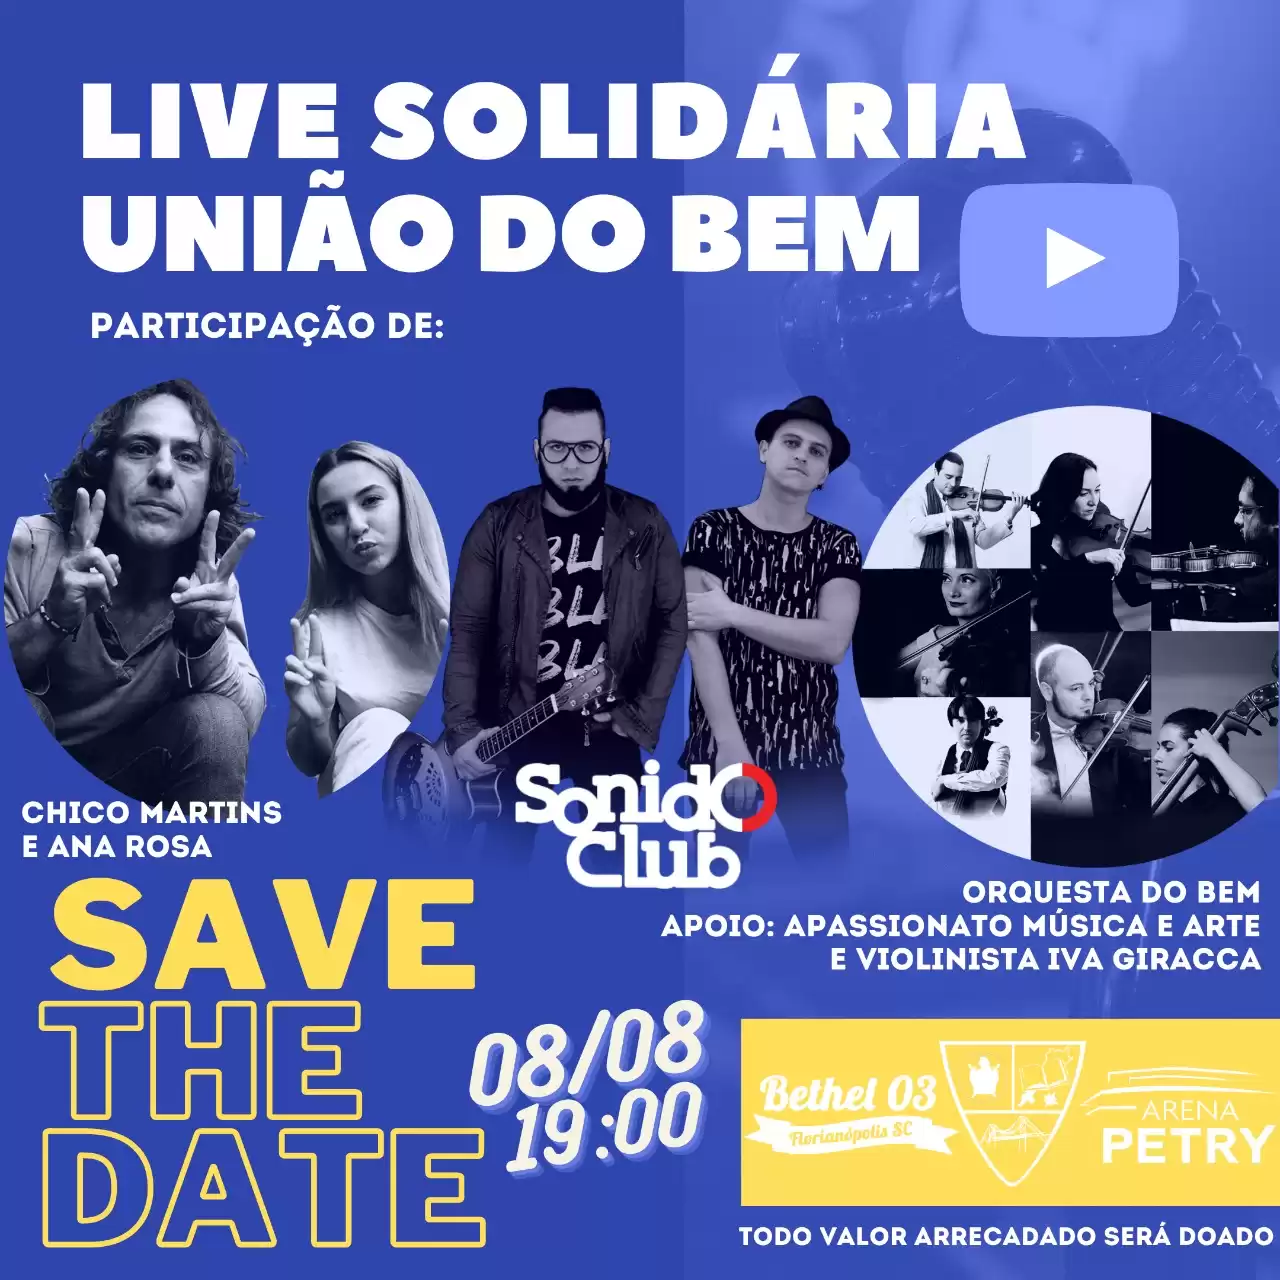 Live solidária arrecada recursos para o projeto Equoterapia Cidadã, que auxilia crianças com deficiência em Florianópolis